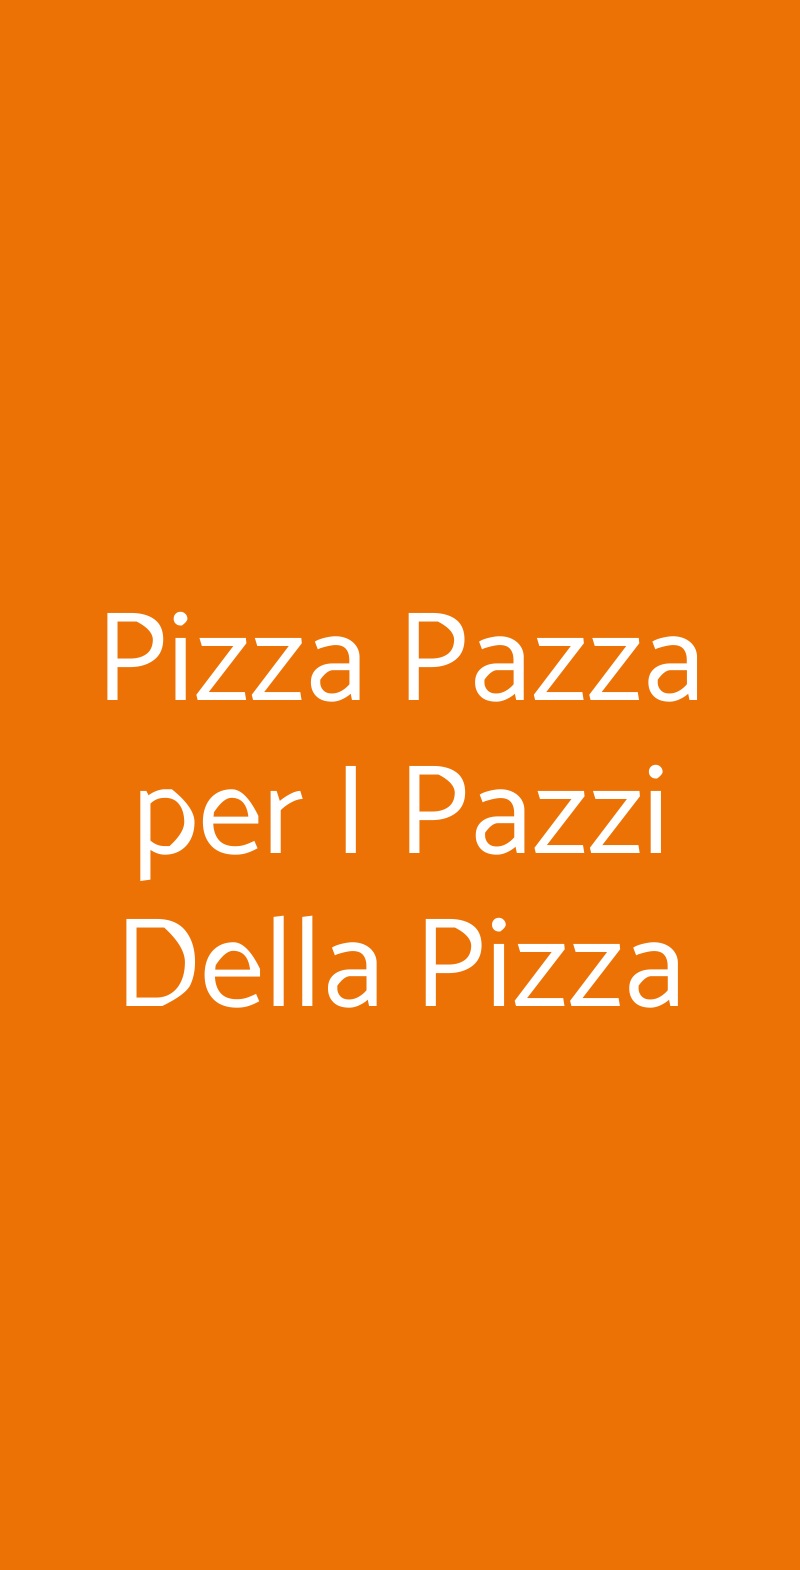 Pizza Pazza per I Pazzi Della Pizza Roma menù 1 pagina